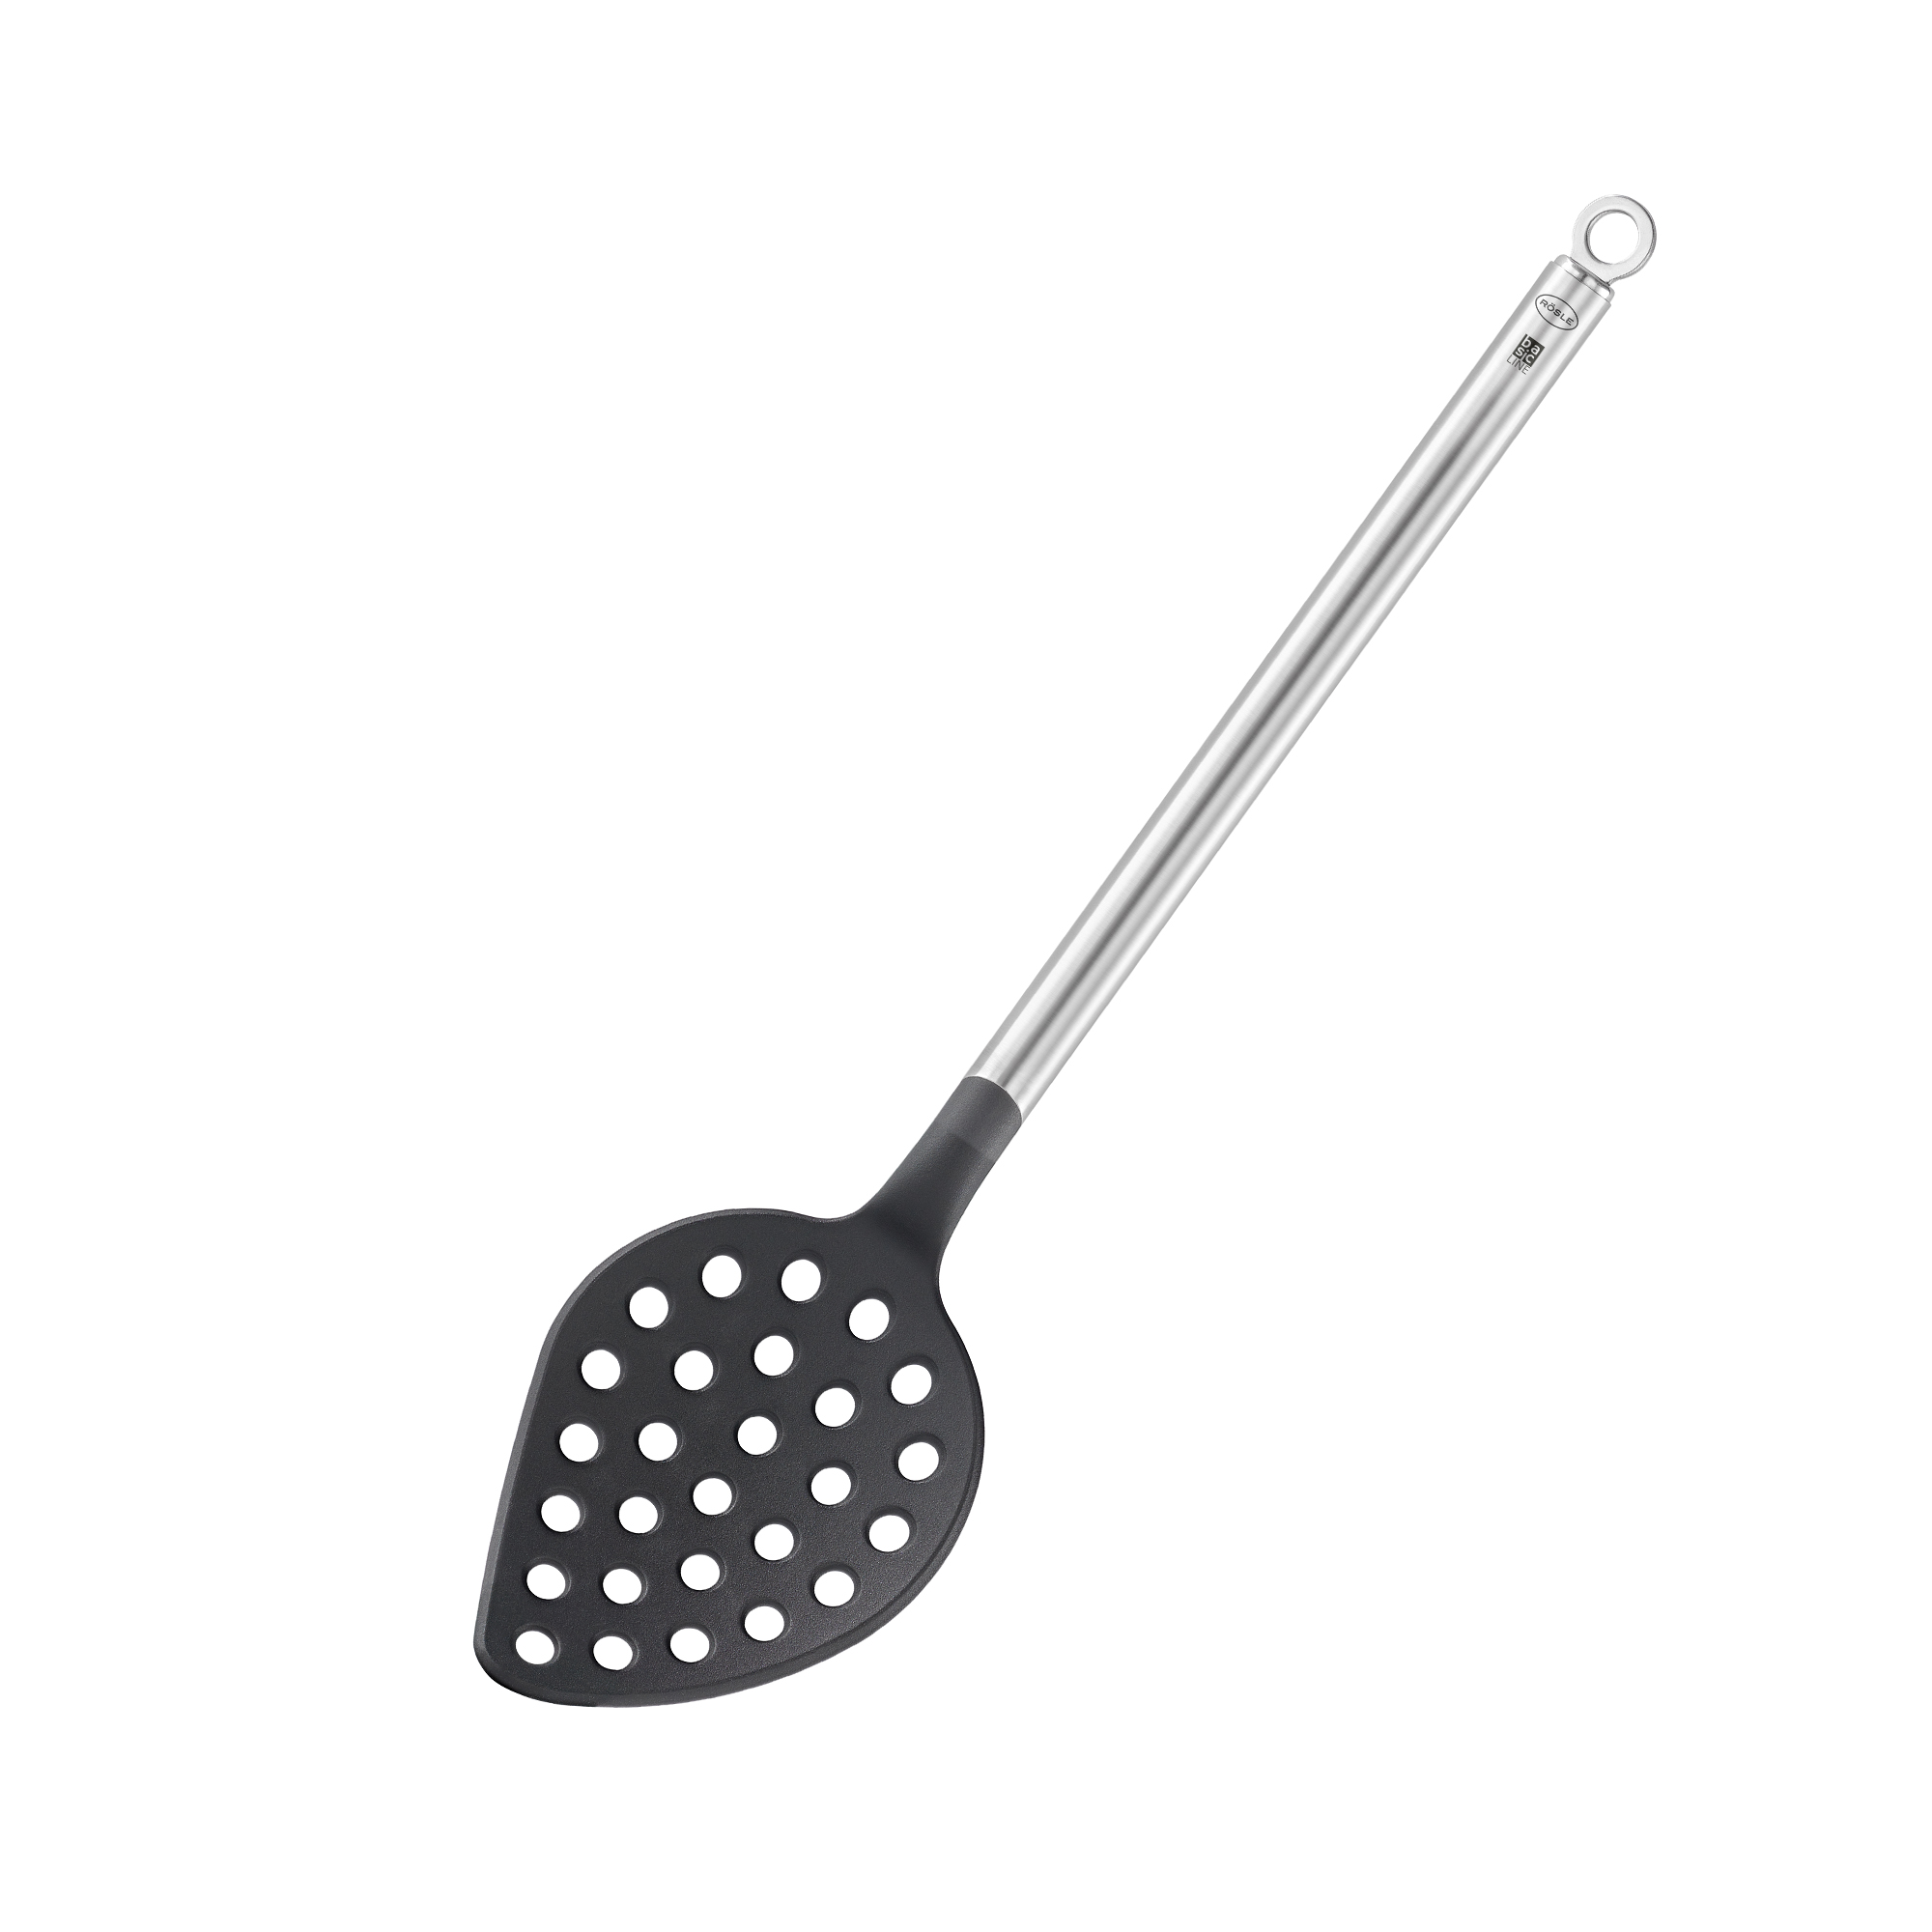 Skimmer spoon "Basic Line" 32 cm I 12.5 in.